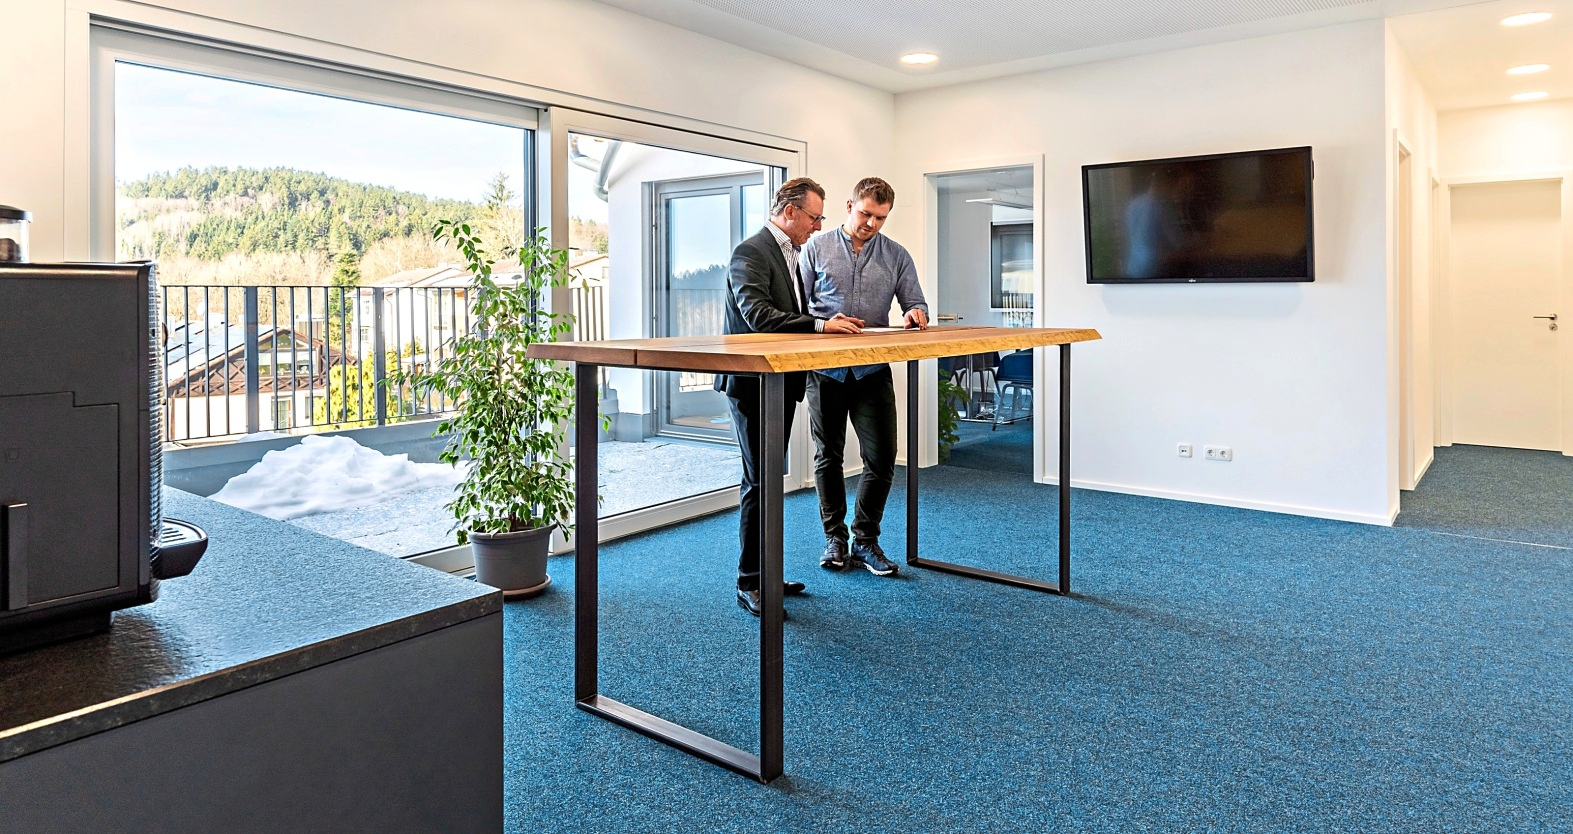 Das neue Büro der Niedermaier Invest Unternehmensgruppe bietet nun Platz für alle Mitarbeiter der verschiedenen Unternehmensbereiche, inklusive der unternehmenseigenen Hausverwaltung der LEAN Home Management GmbH.